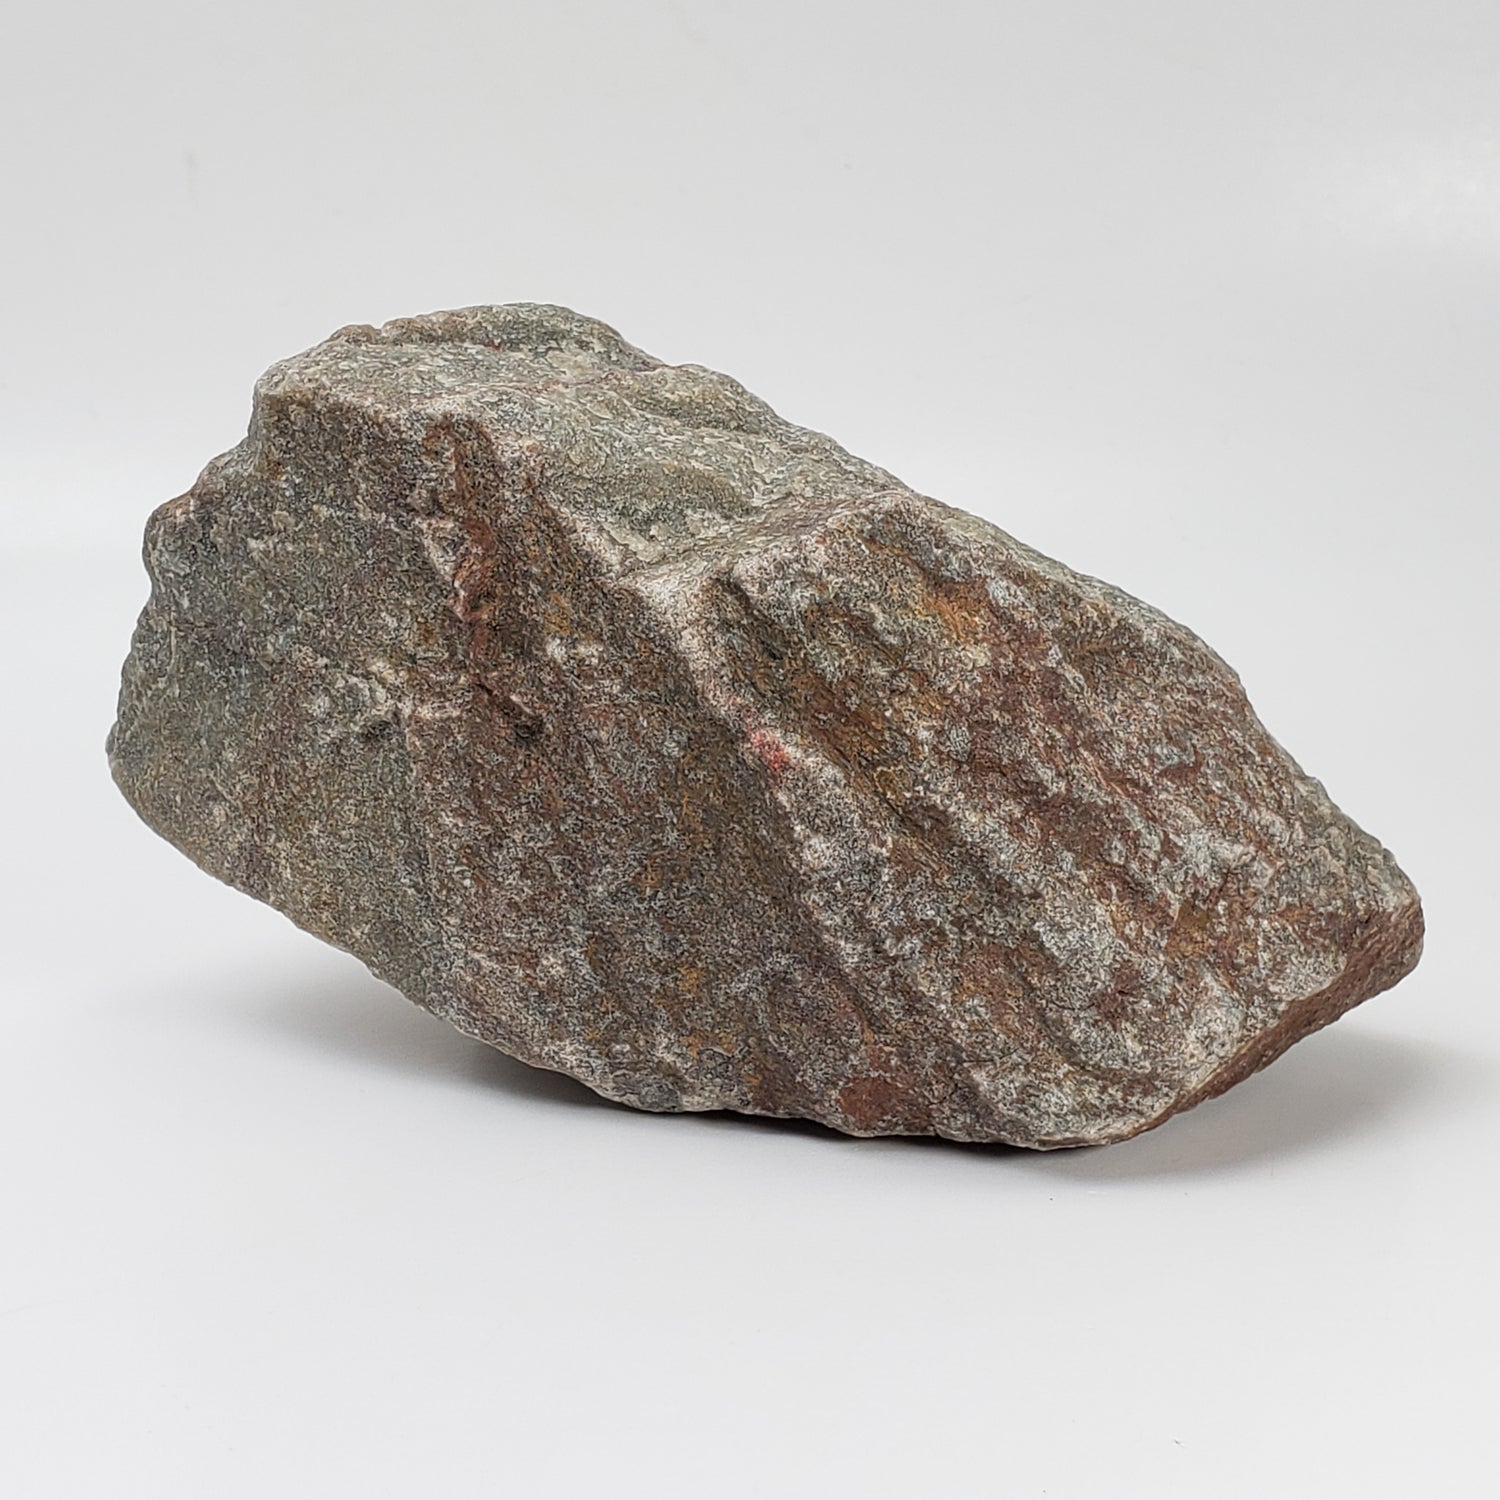 Shatter Cone | 903 grams |  Impactite | Sudbury Impact Structure | Ontario, Canada